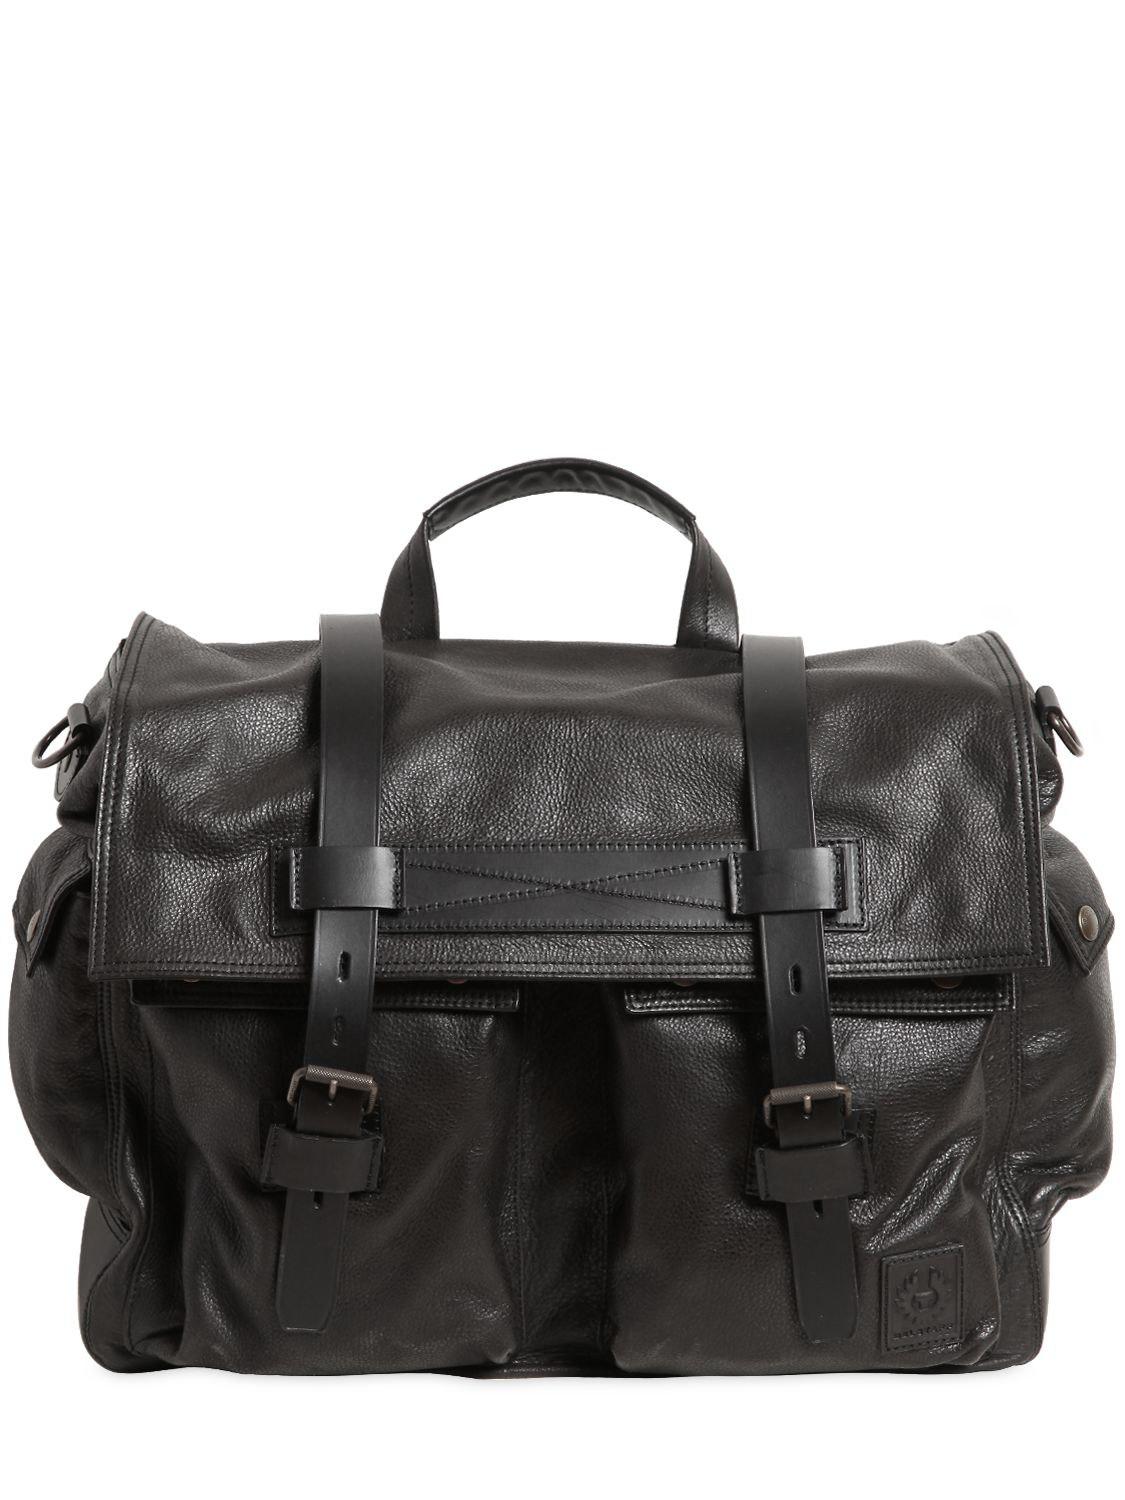 Belstaff Colonial Leather Messenger Bag in Black for Men - Lyst